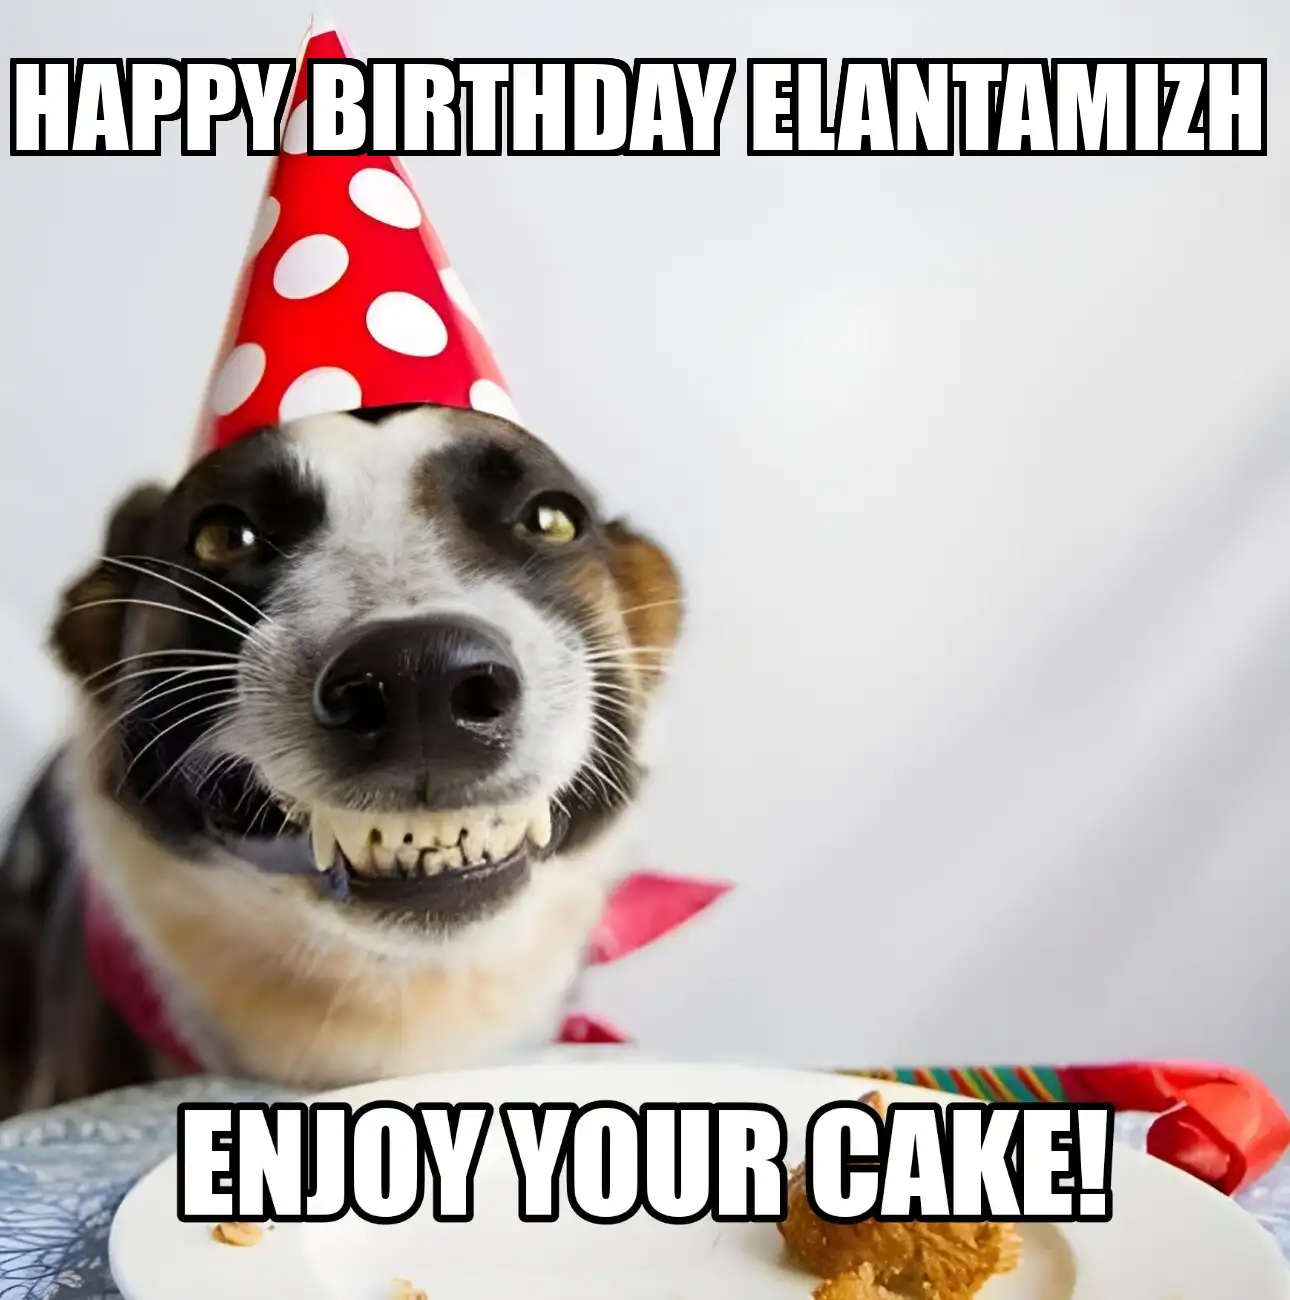 Happy Birthday Elantamizh Enjoy Your Cake Dog Meme